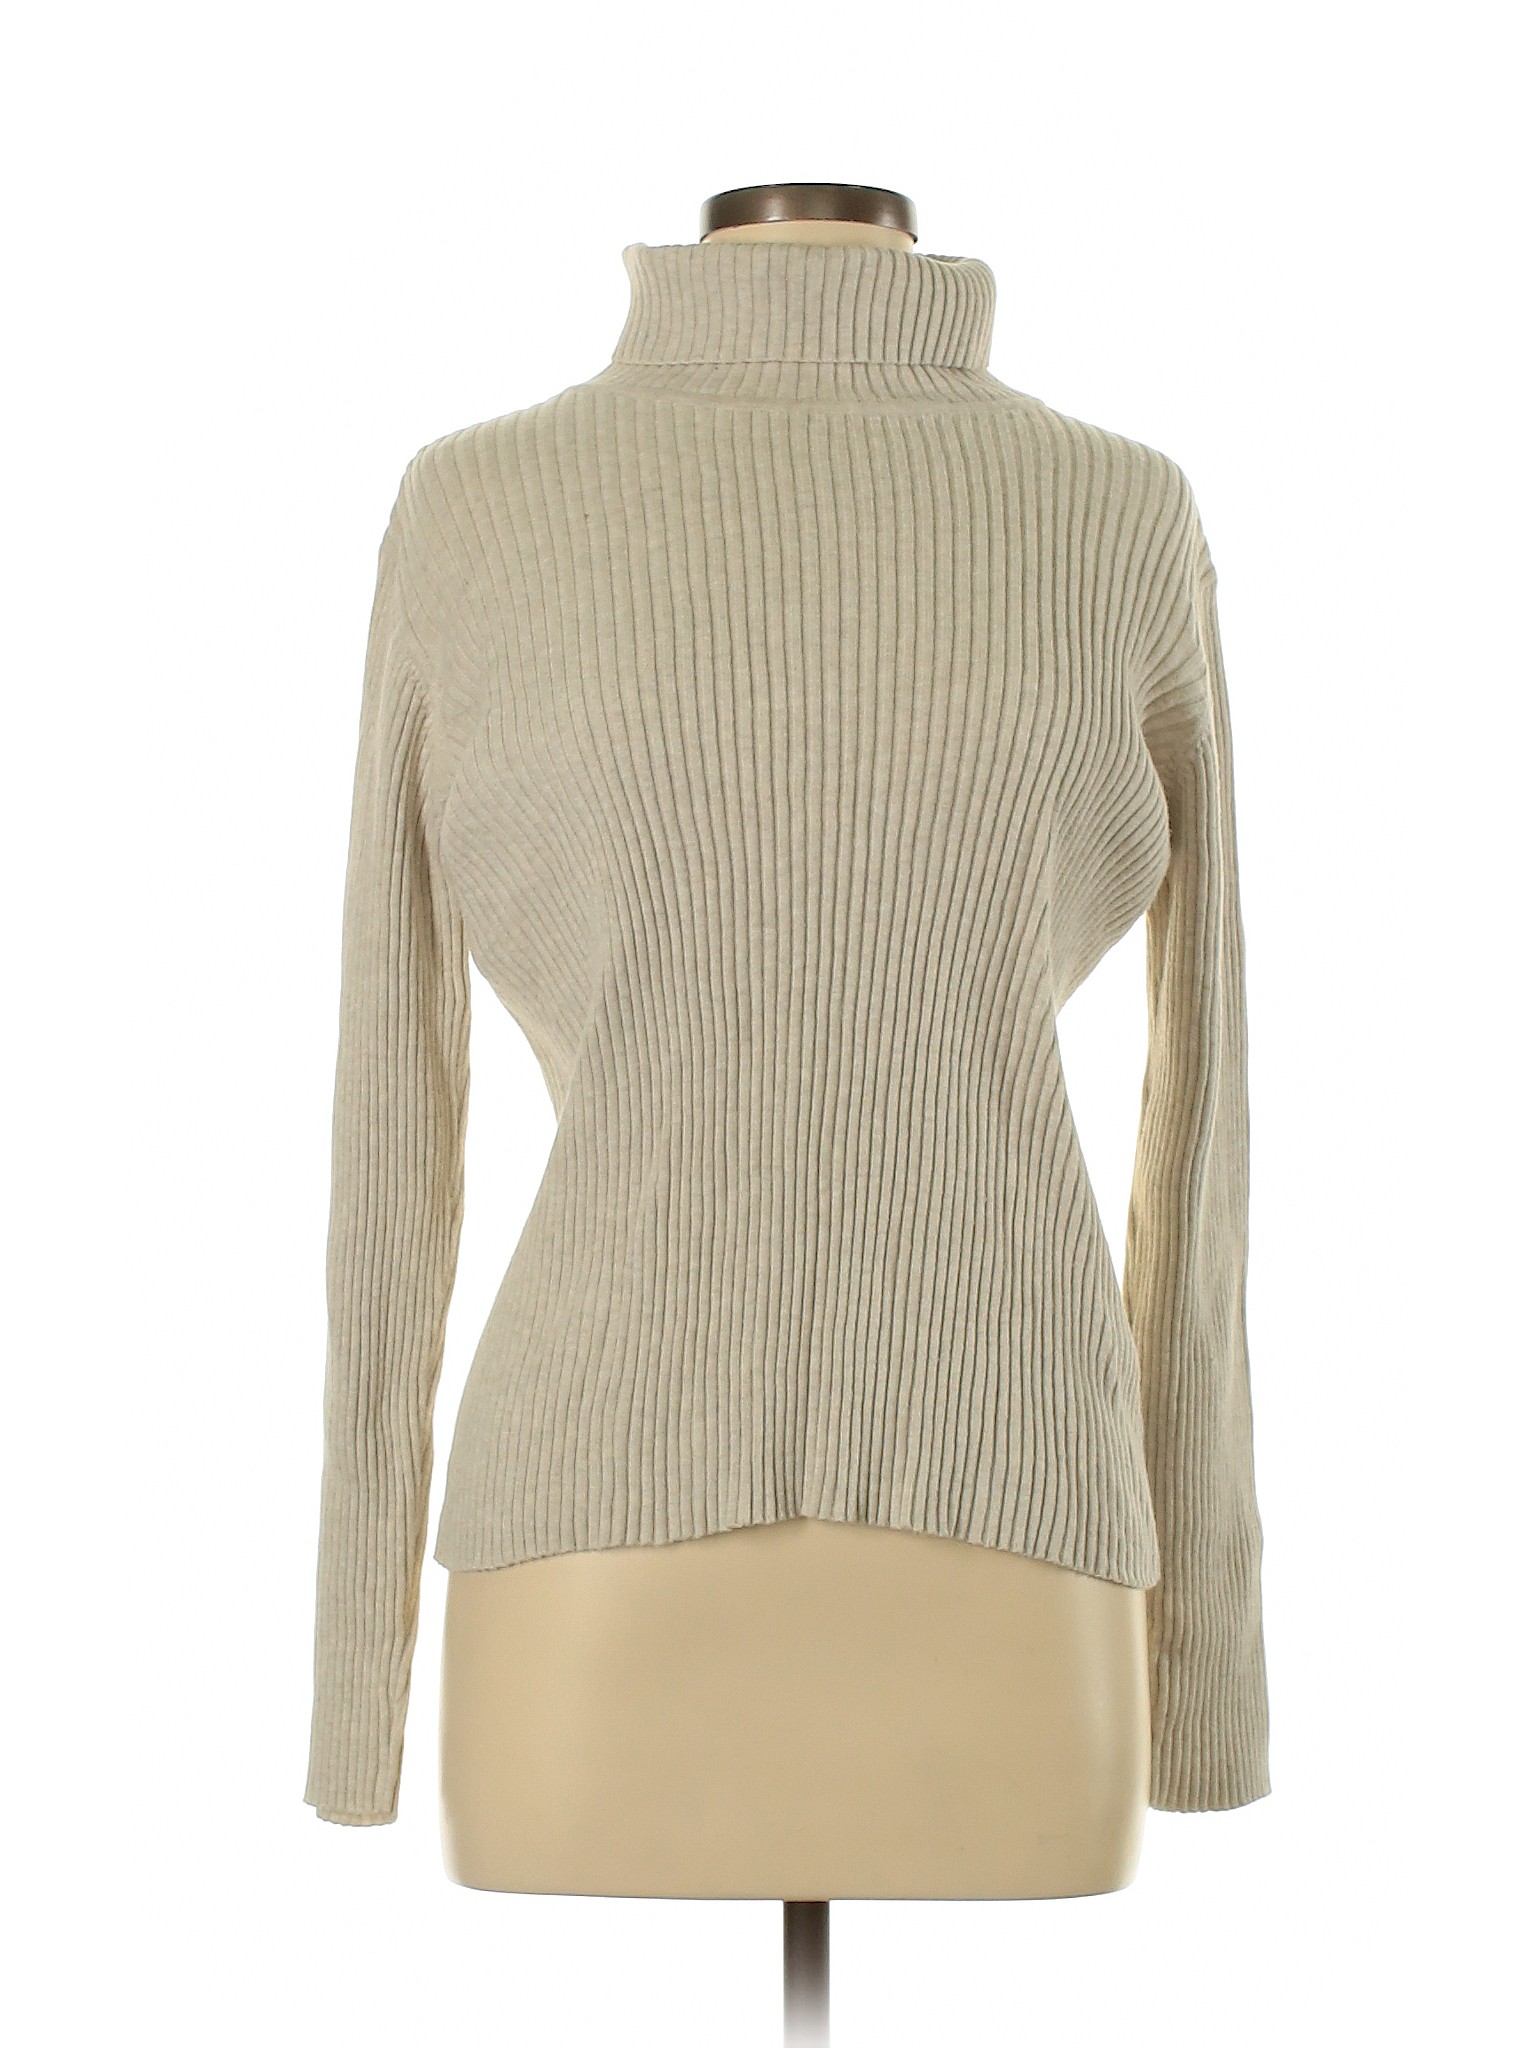 J.Jill Women Ivory Turtleneck Sweater S | eBay